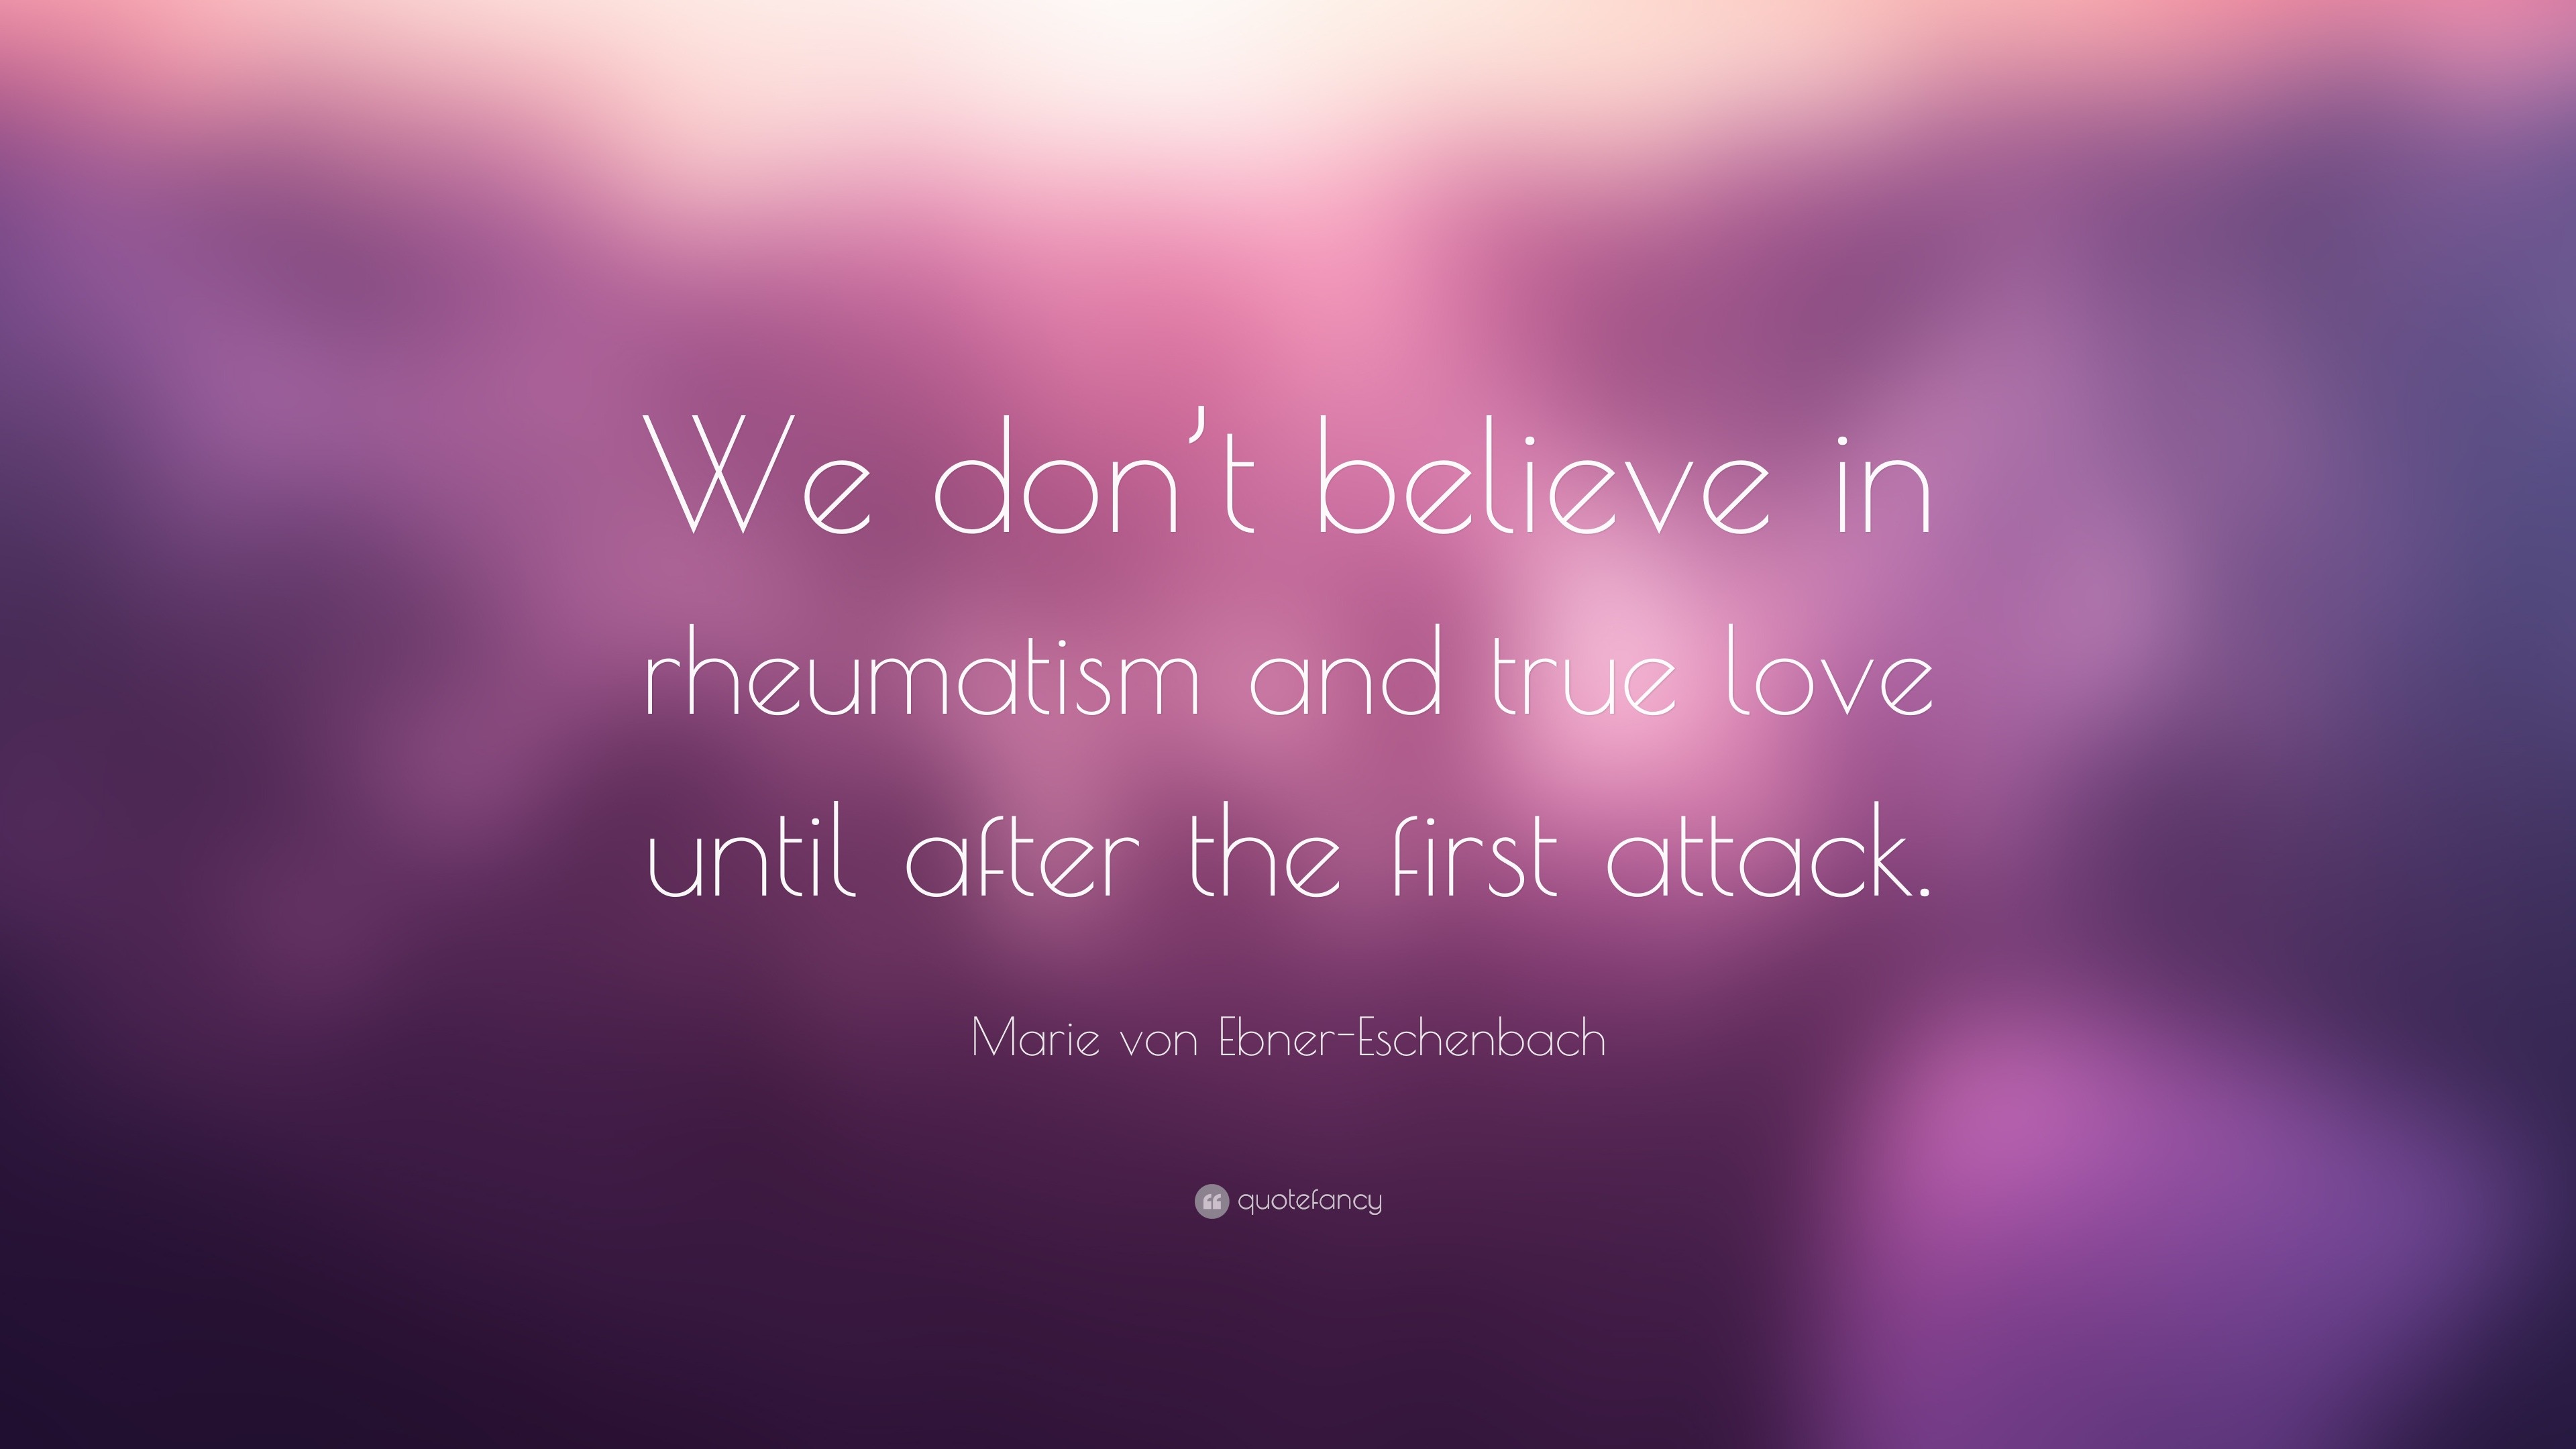 Marie von Ebner Eschenbach Quote “We don t believe in rheumatism and